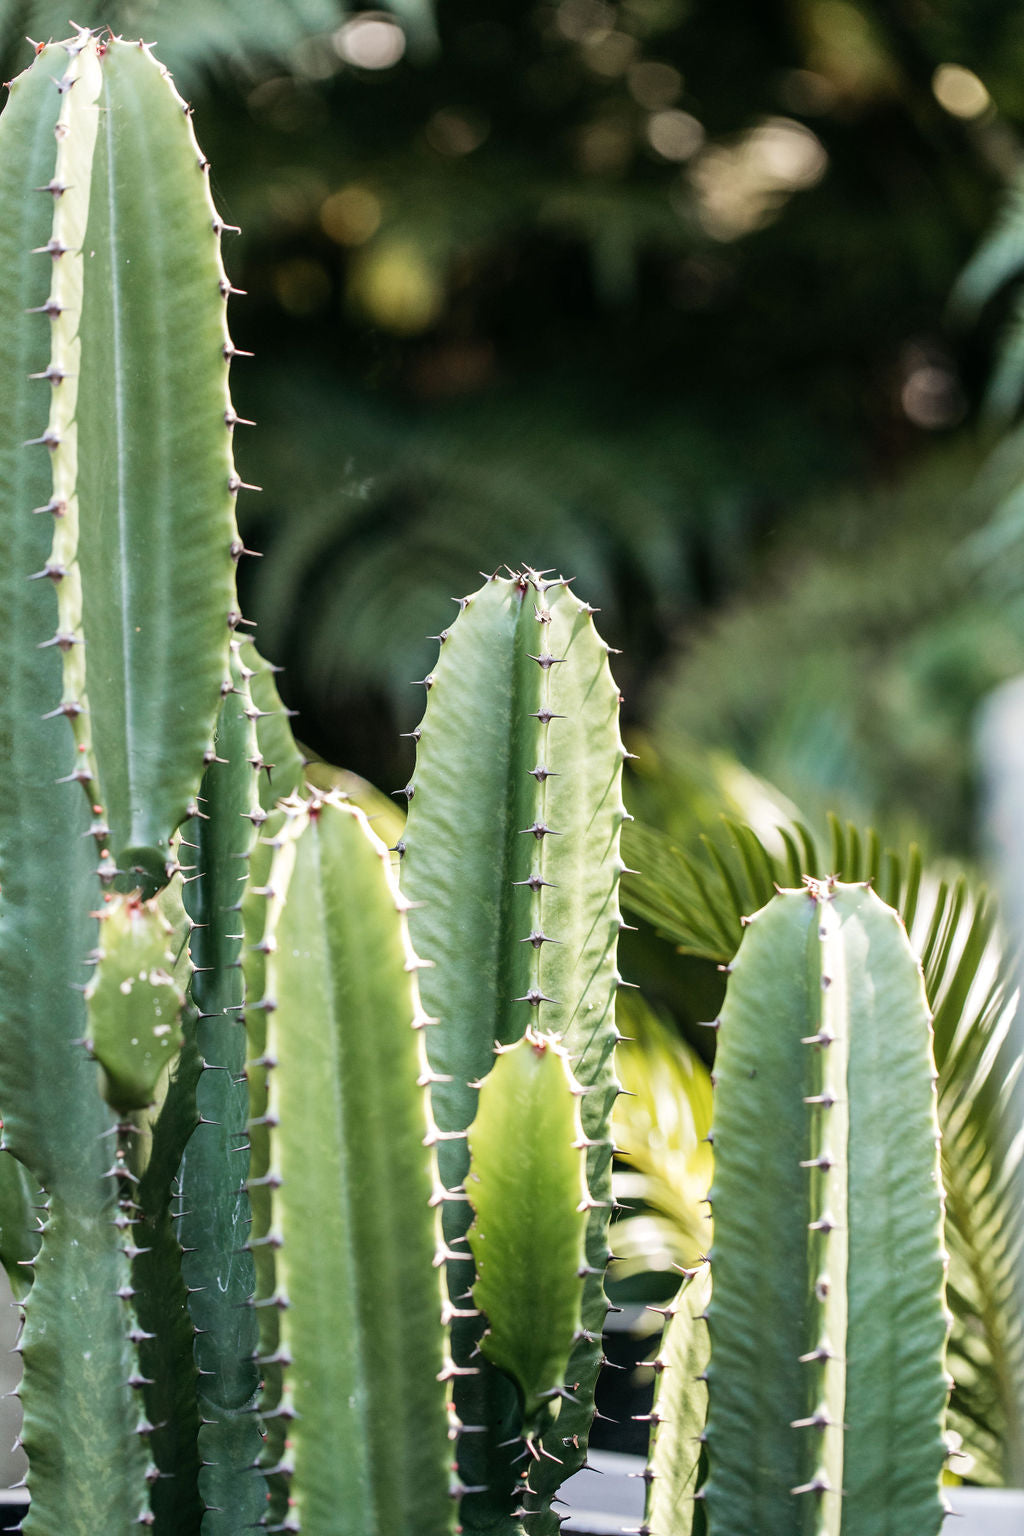 Cowboy Cactus (Euphorbia ingens)